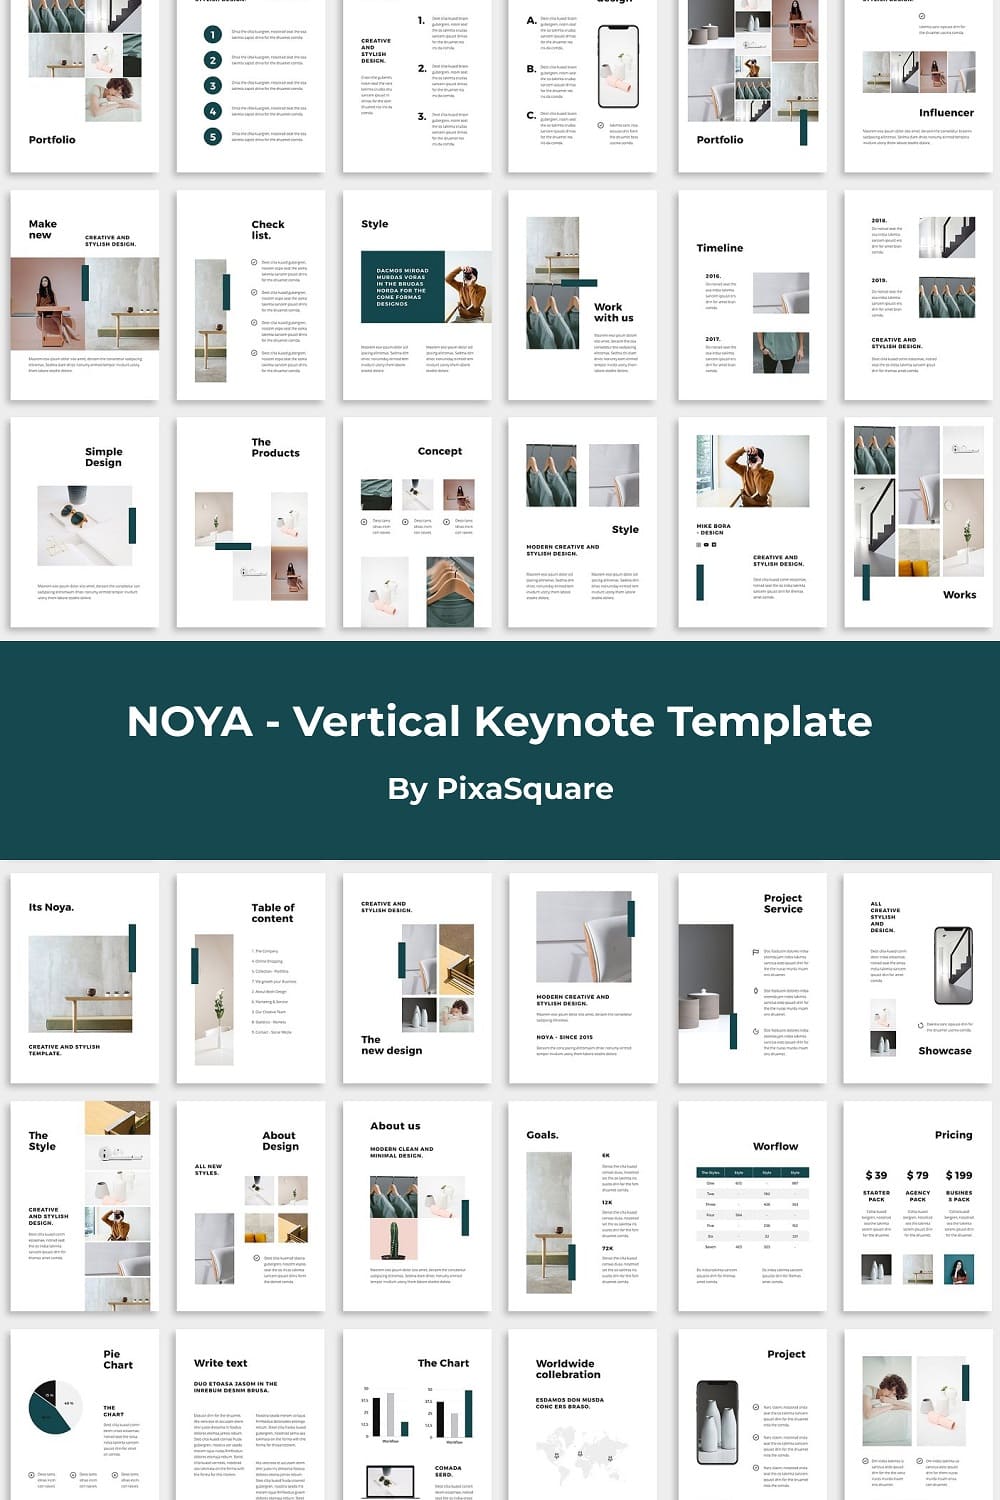 Noya - Vertical Keynote Template by PixaSquare.